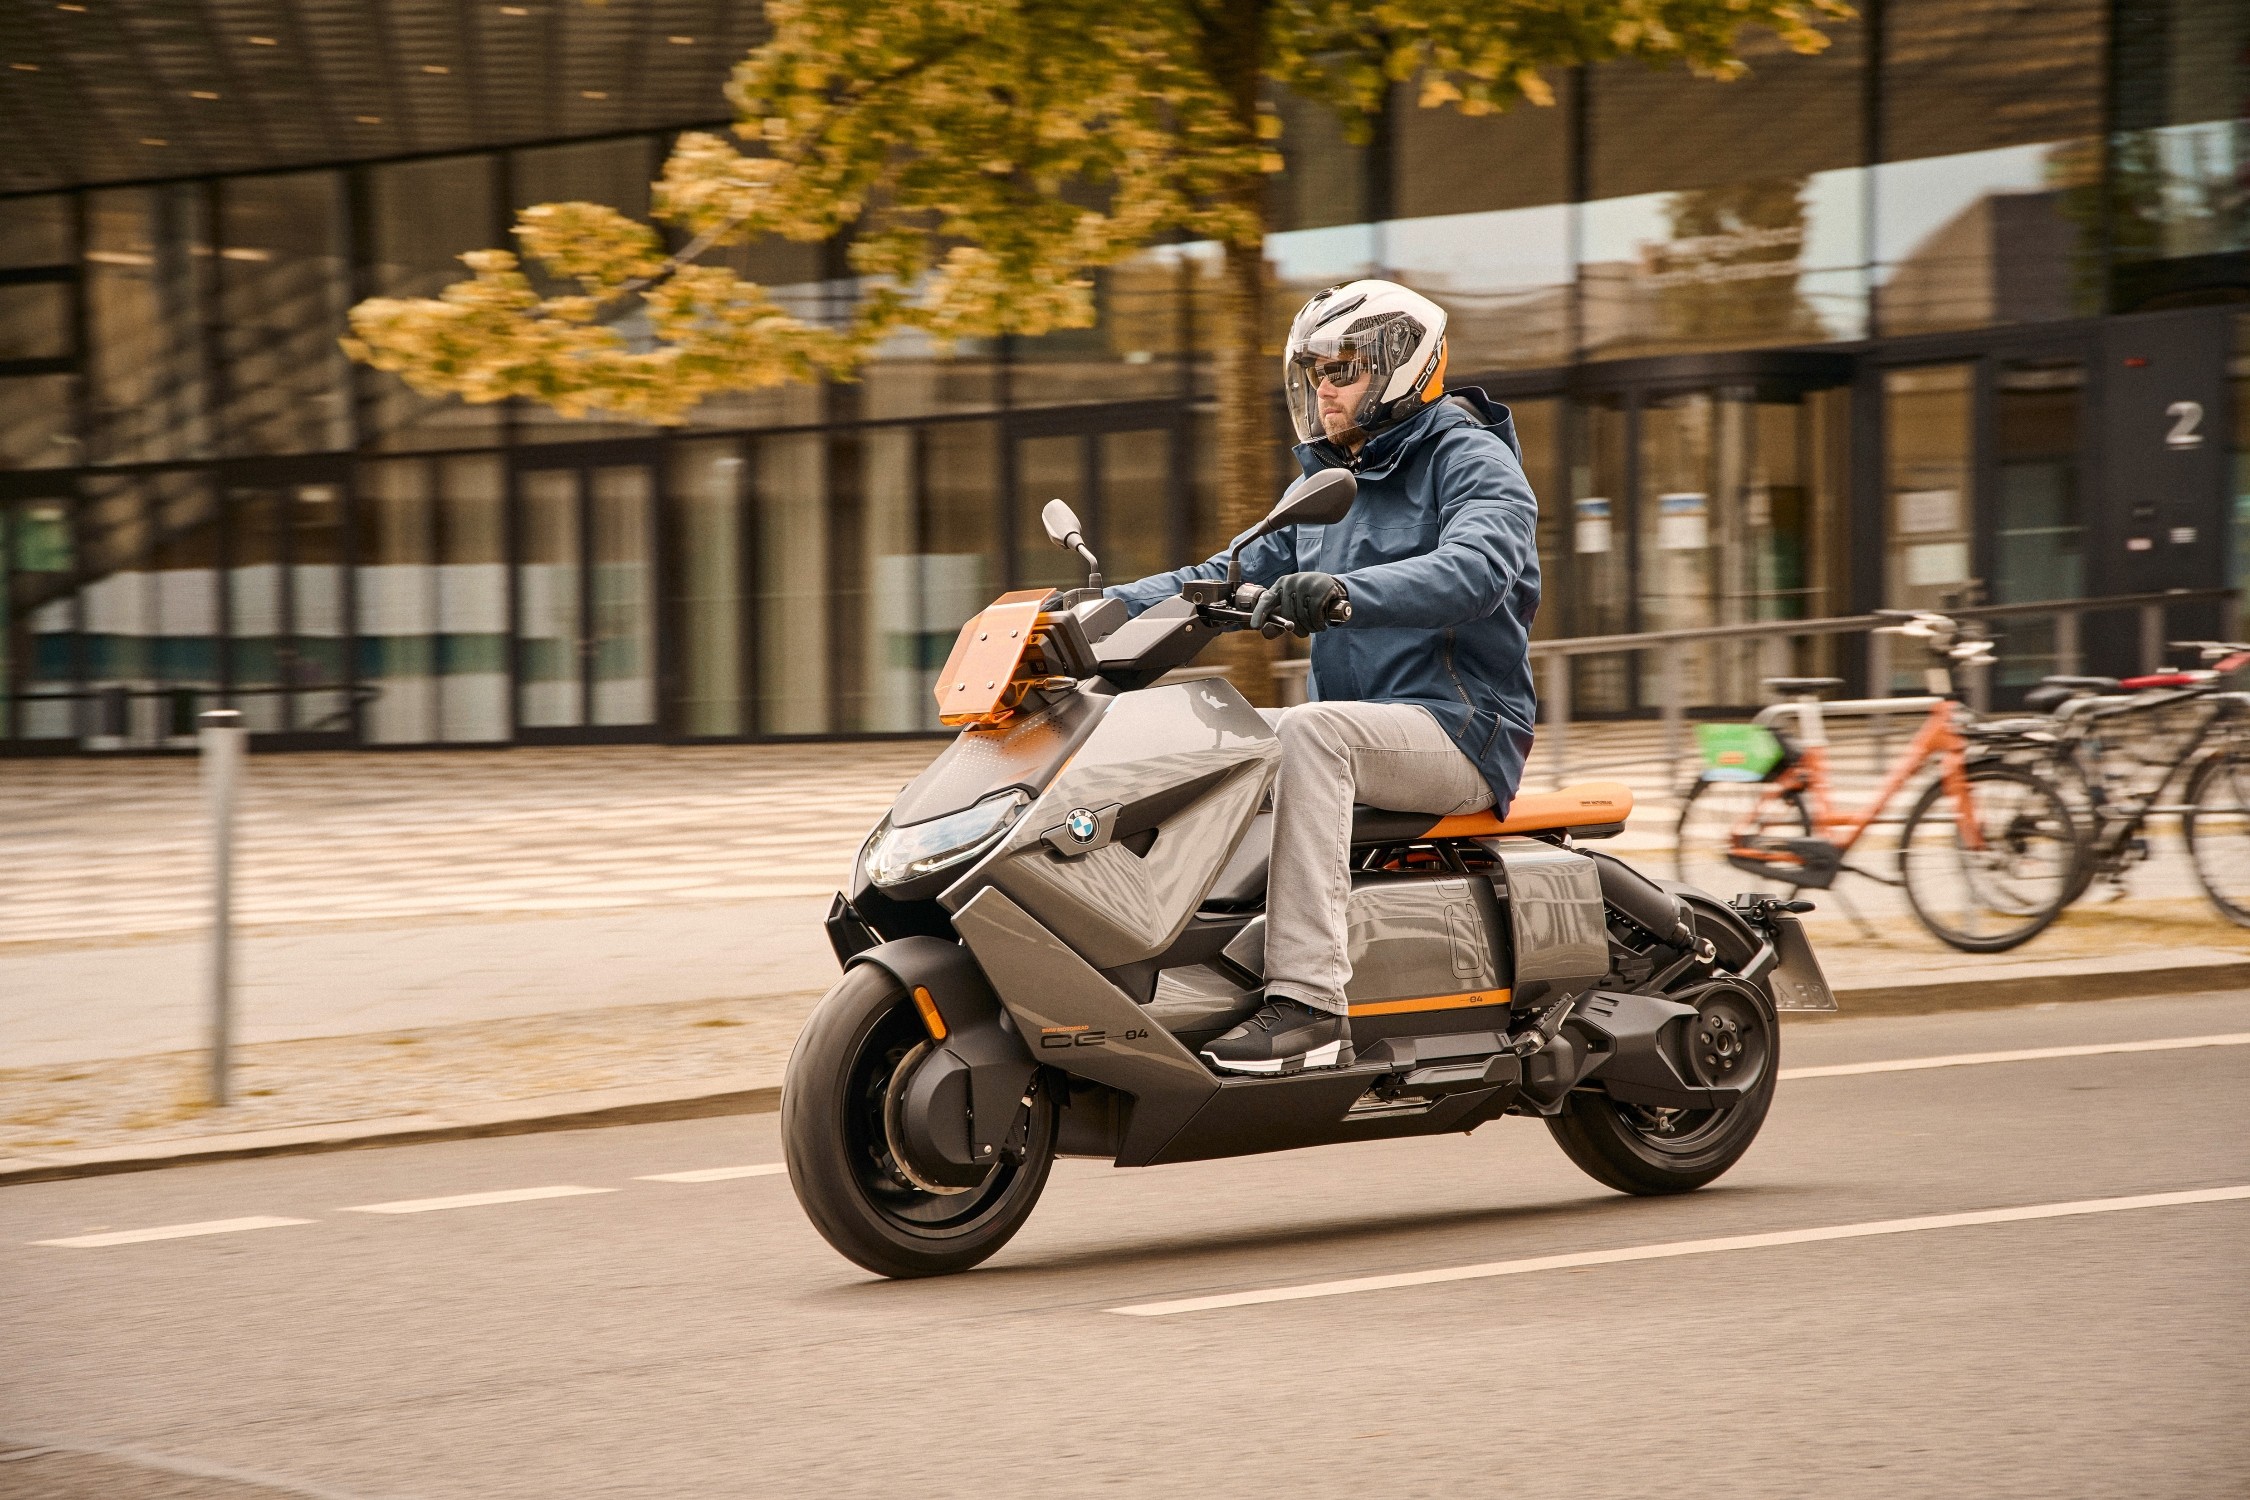 Ocurrencia panorama Entretener I 10 migliori scooter elettrici da comprare con gli incentivi 2022 - greenMe